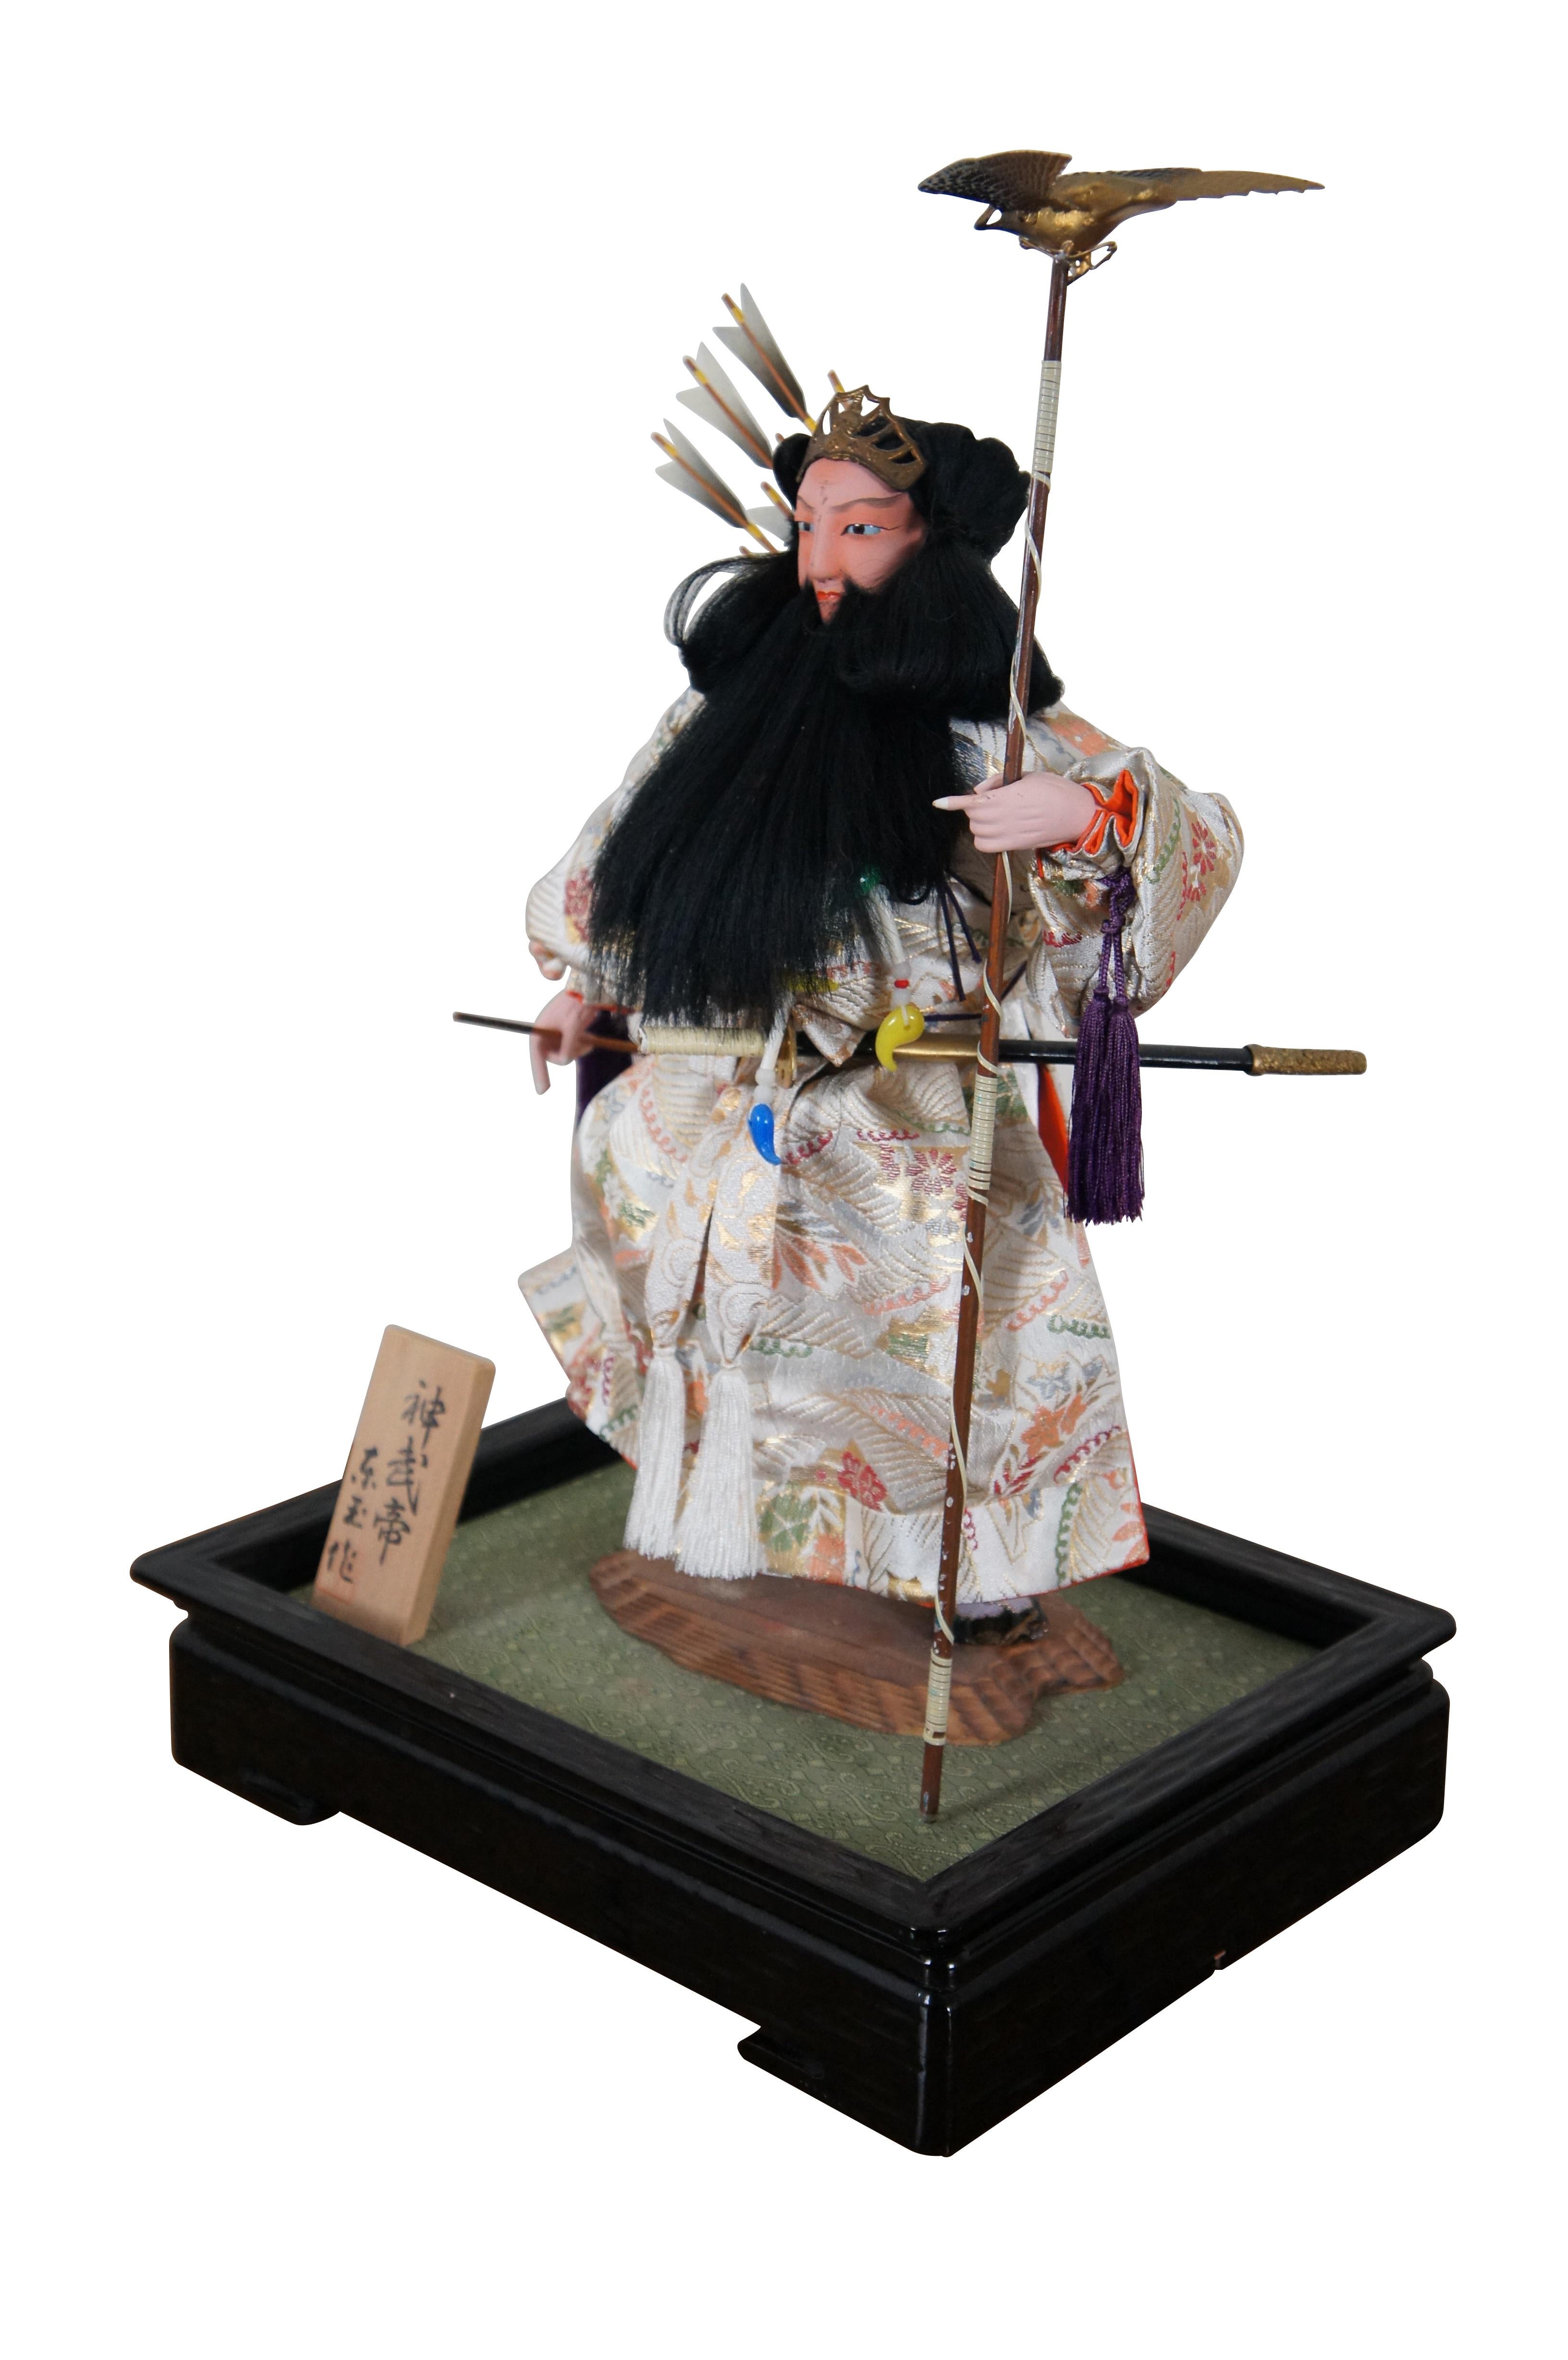 Poupée / figurine vintage représentant Jinmu Tenno - le légendaire premier empereur du Japon. La poupée est fabriquée en porcelaine non émaillée, avec une tête et des mains en biscuit, des traits peints et une jolie robe en soie blanche. L'empereur